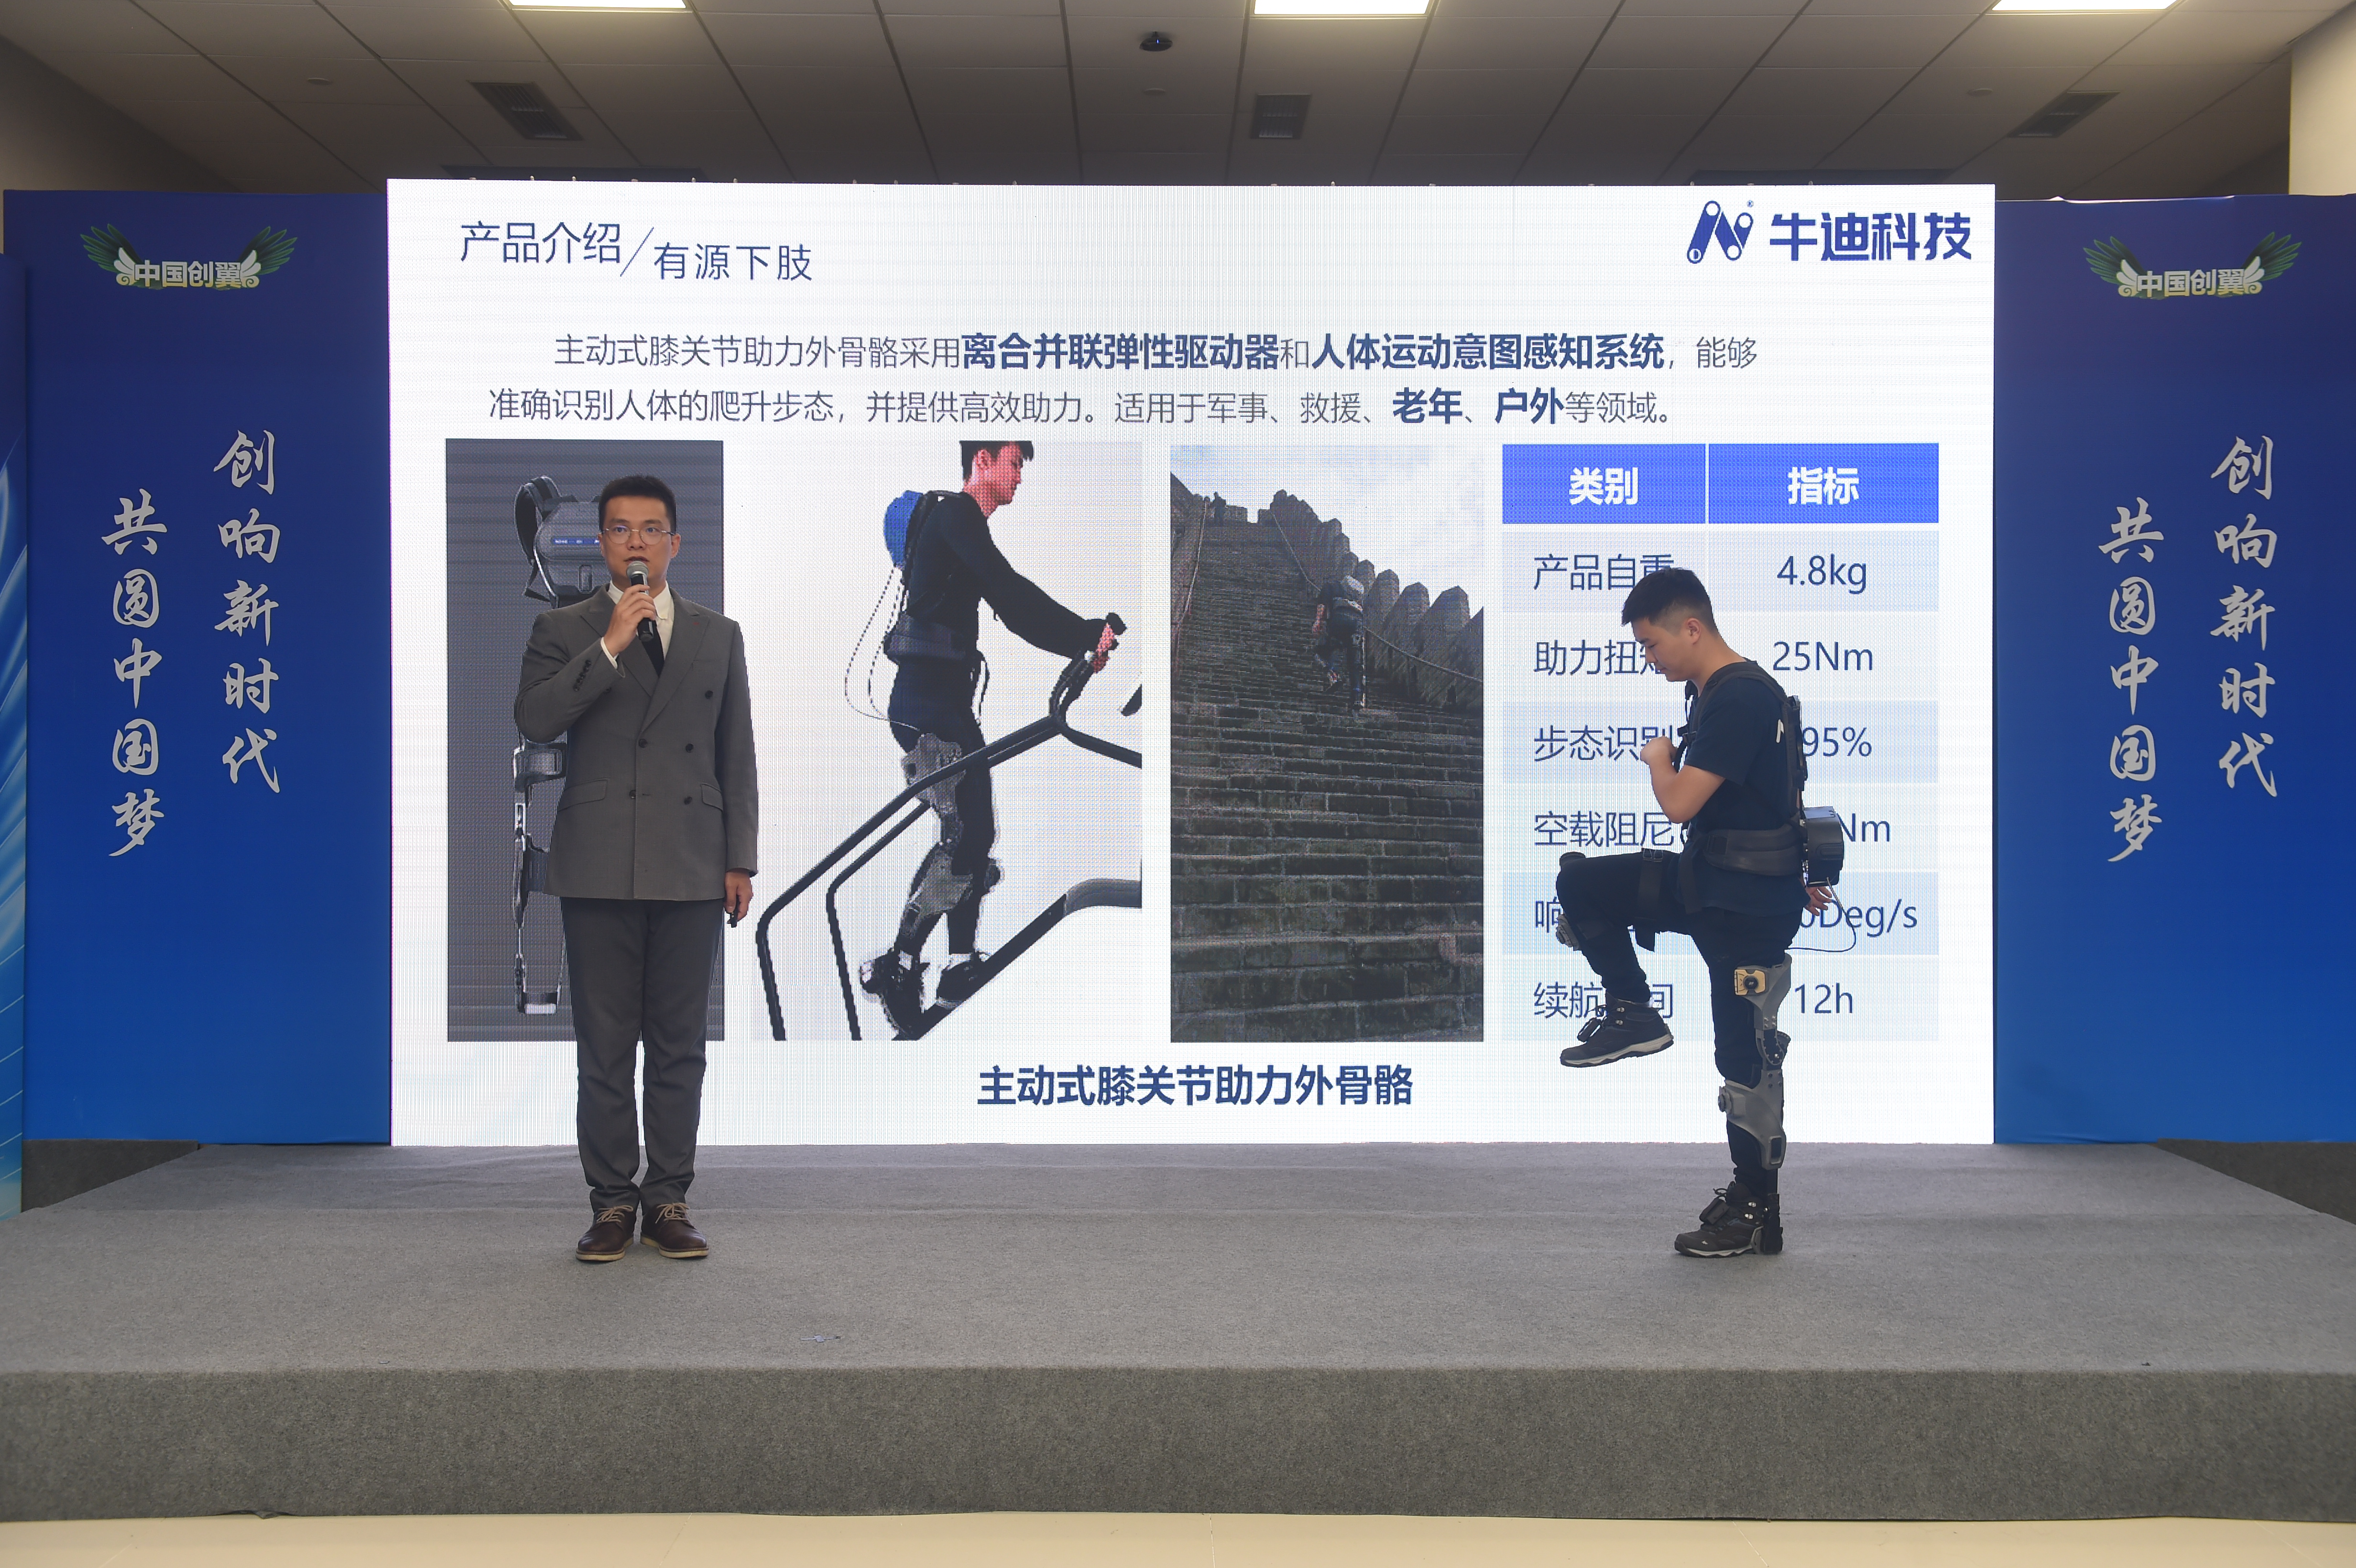 重庆8个项目晋级 第五届“中国创翼”创业创新大赛全国总决赛将于9月底举行